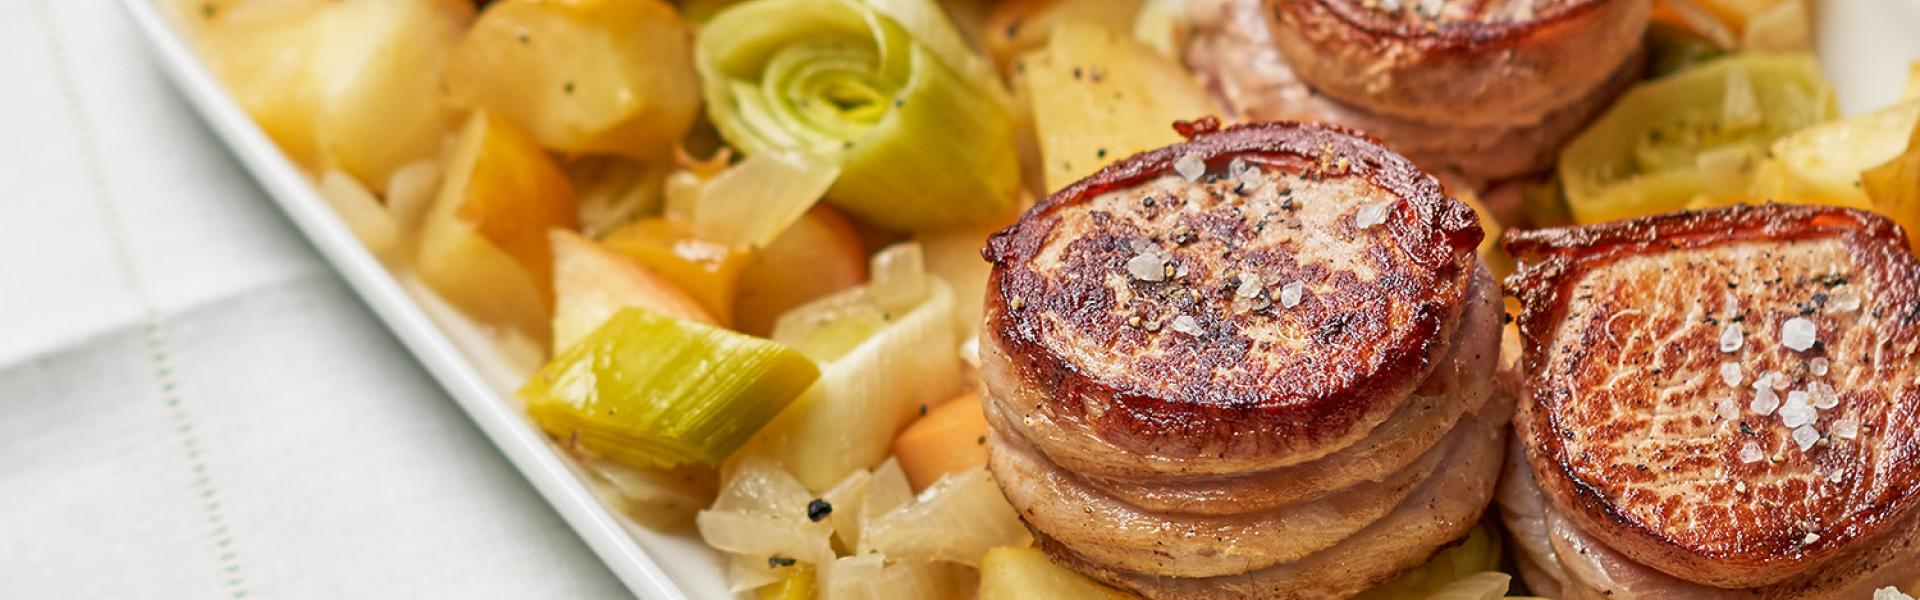 Schweinefiletmedaillons mit Bacon und Apfel-Lauchgemüse im Cookit ...